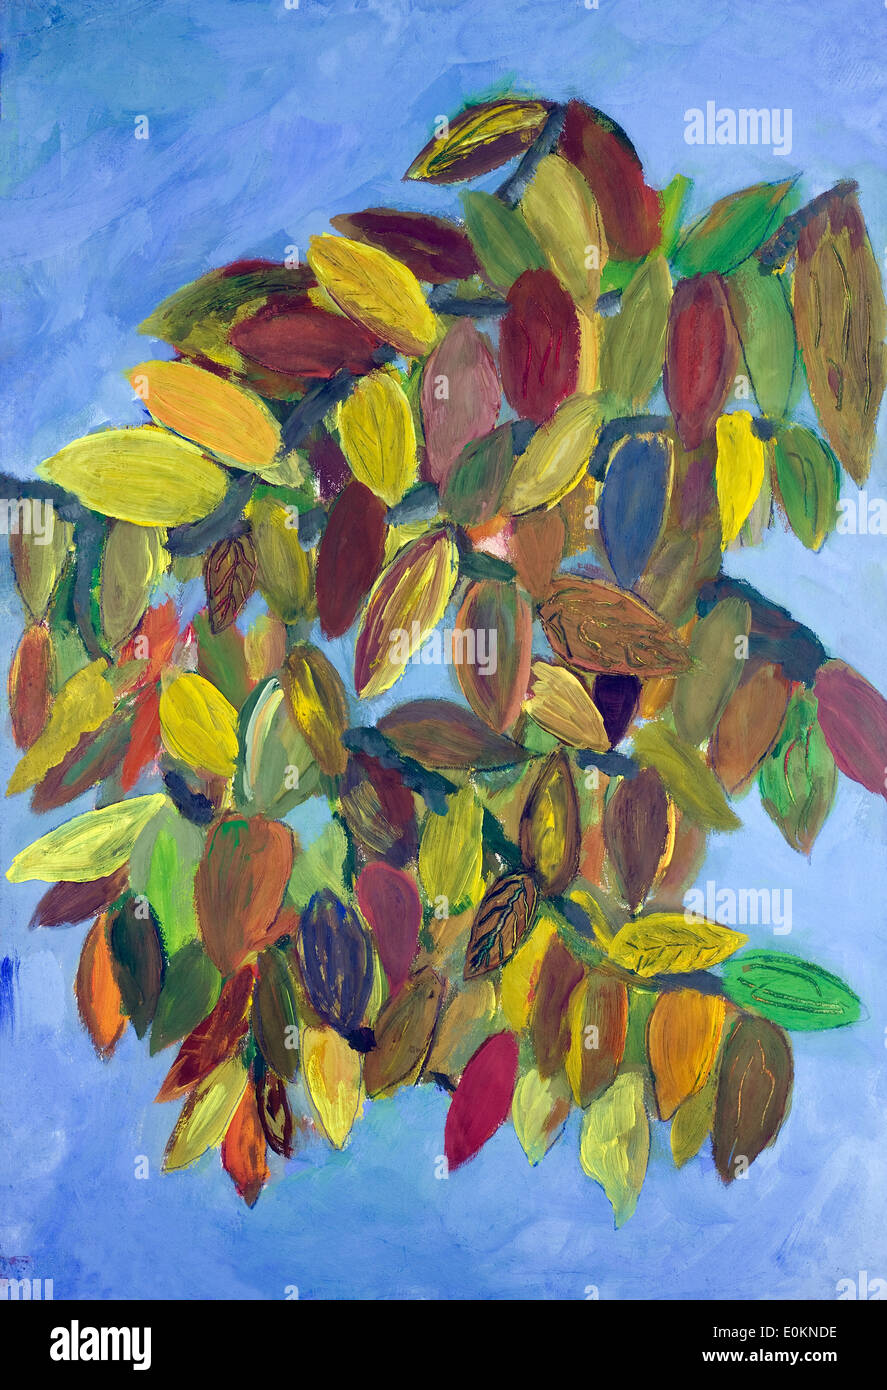 Les feuilles d'automne contre le ciel concept de jazz. L'enfant fait main naine art peinture huile background Banque D'Images